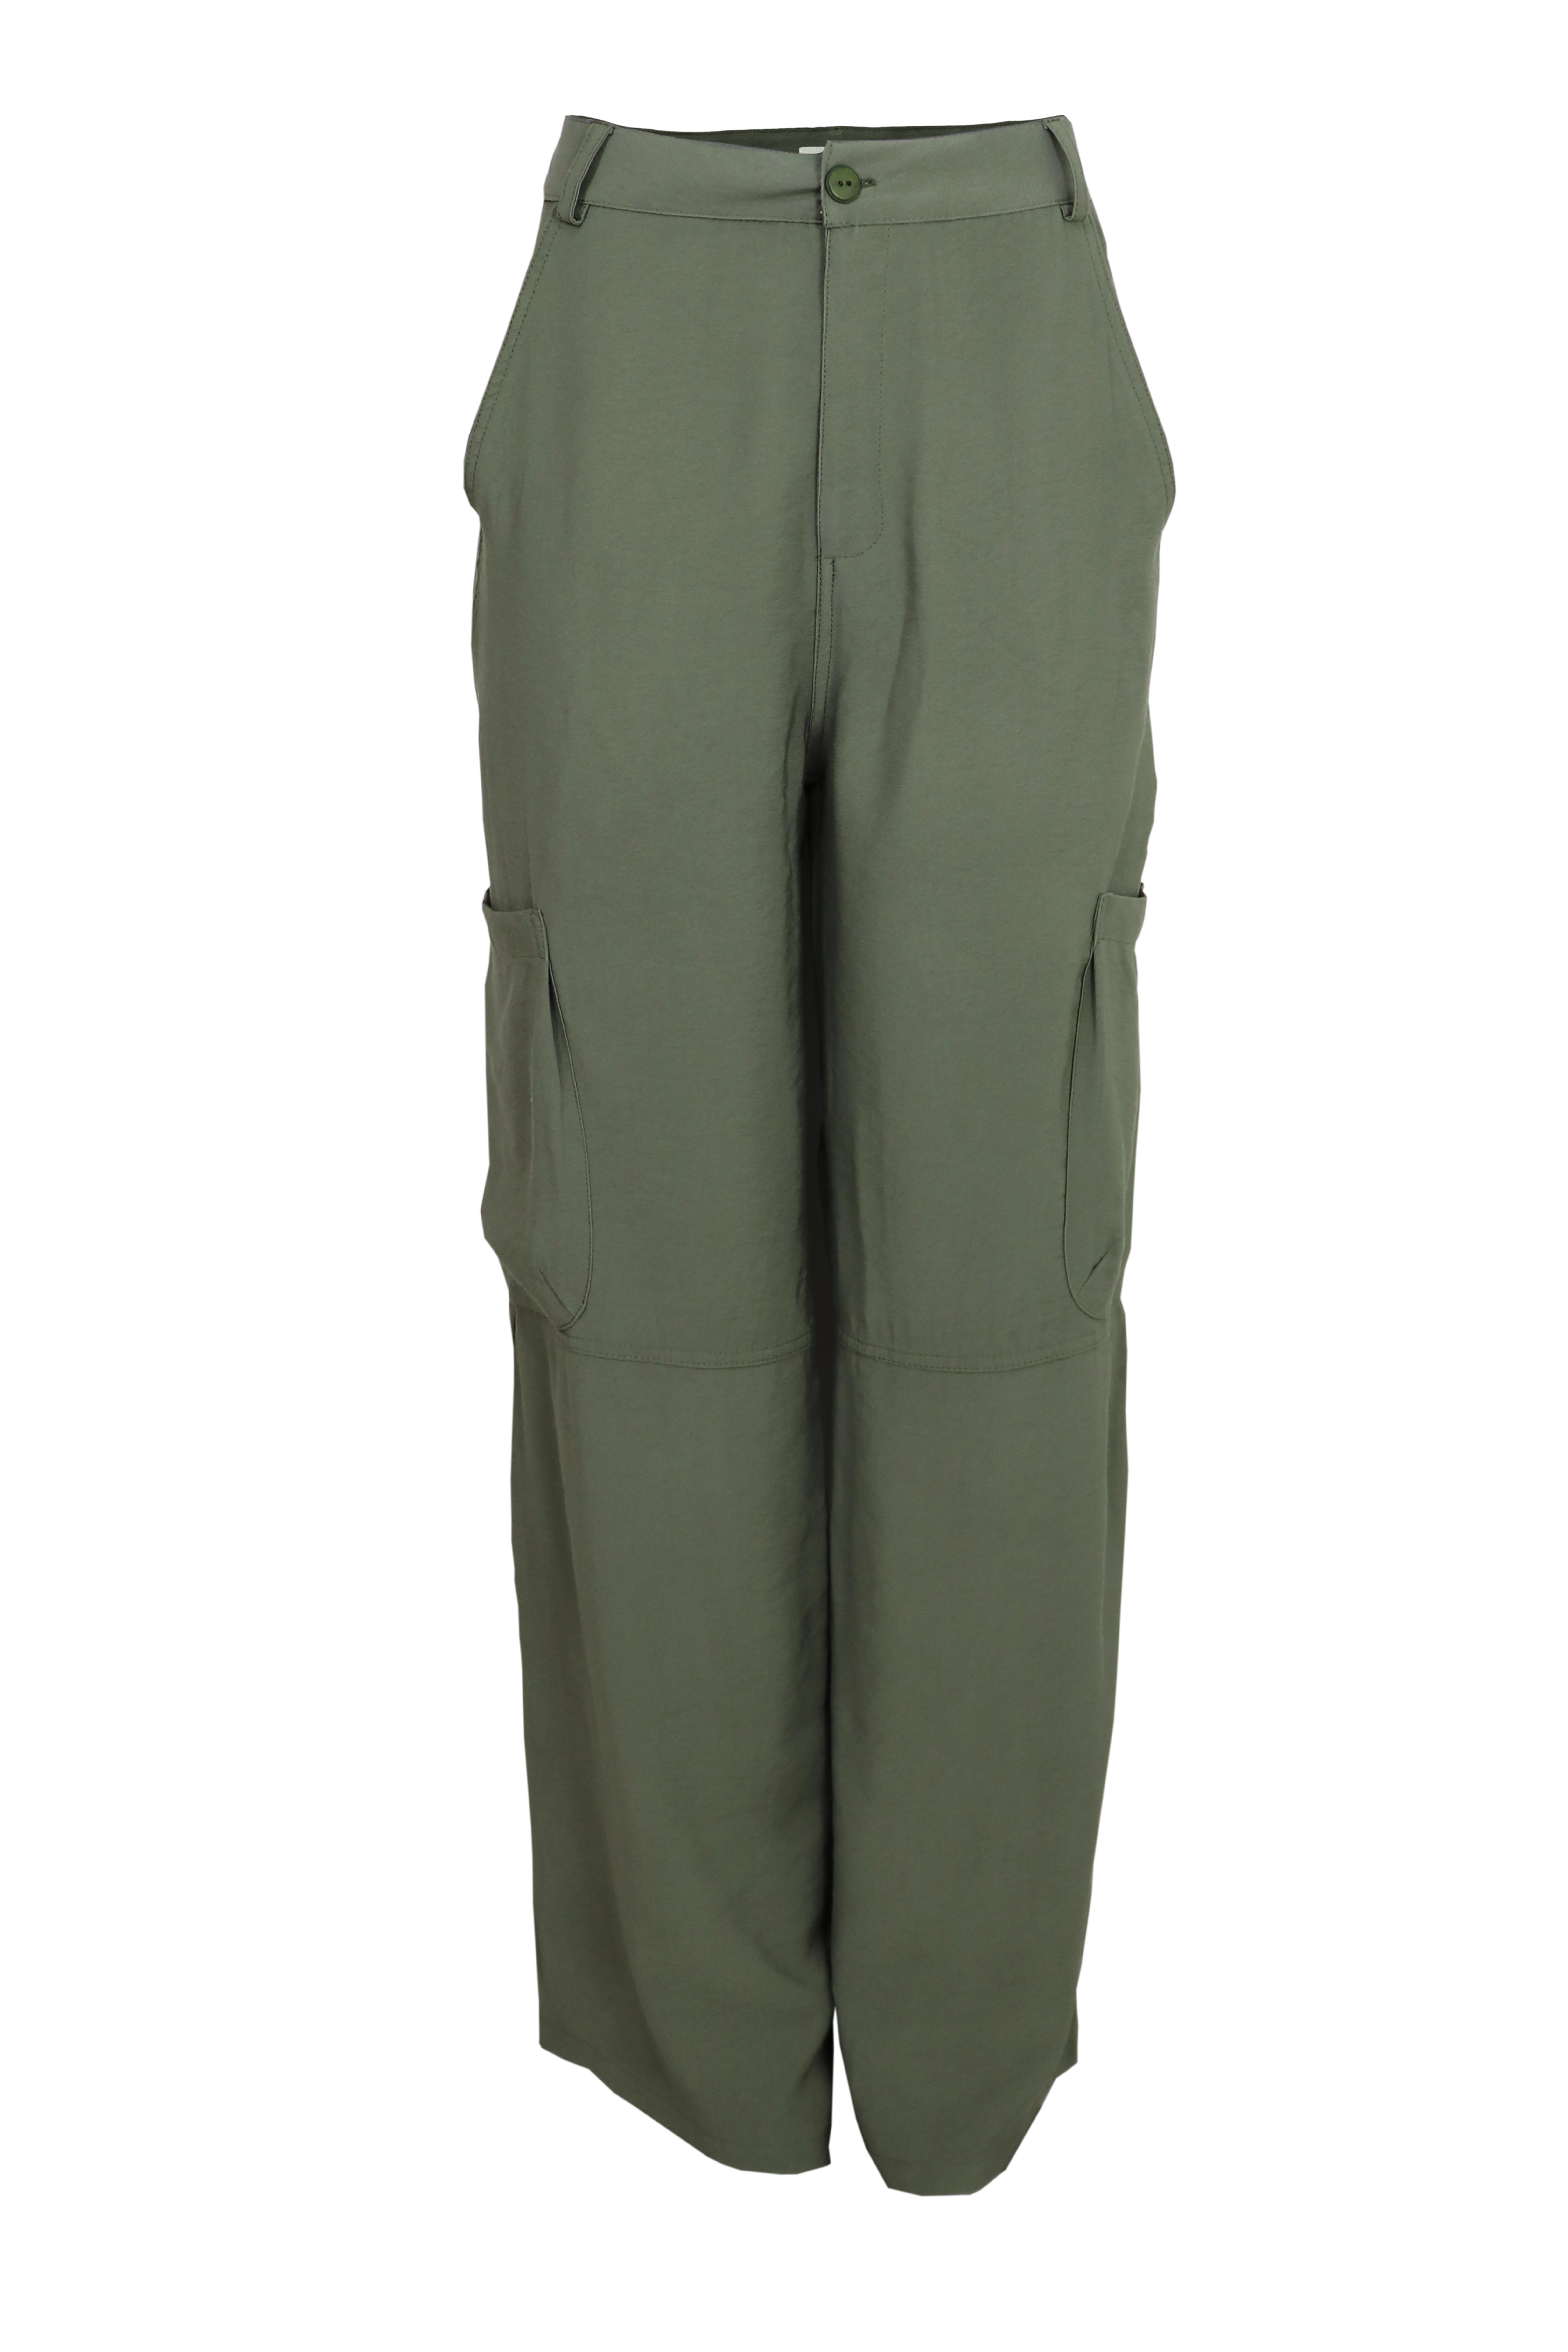 Pantalon tipo cargo con bolsillos laterales color verde militar